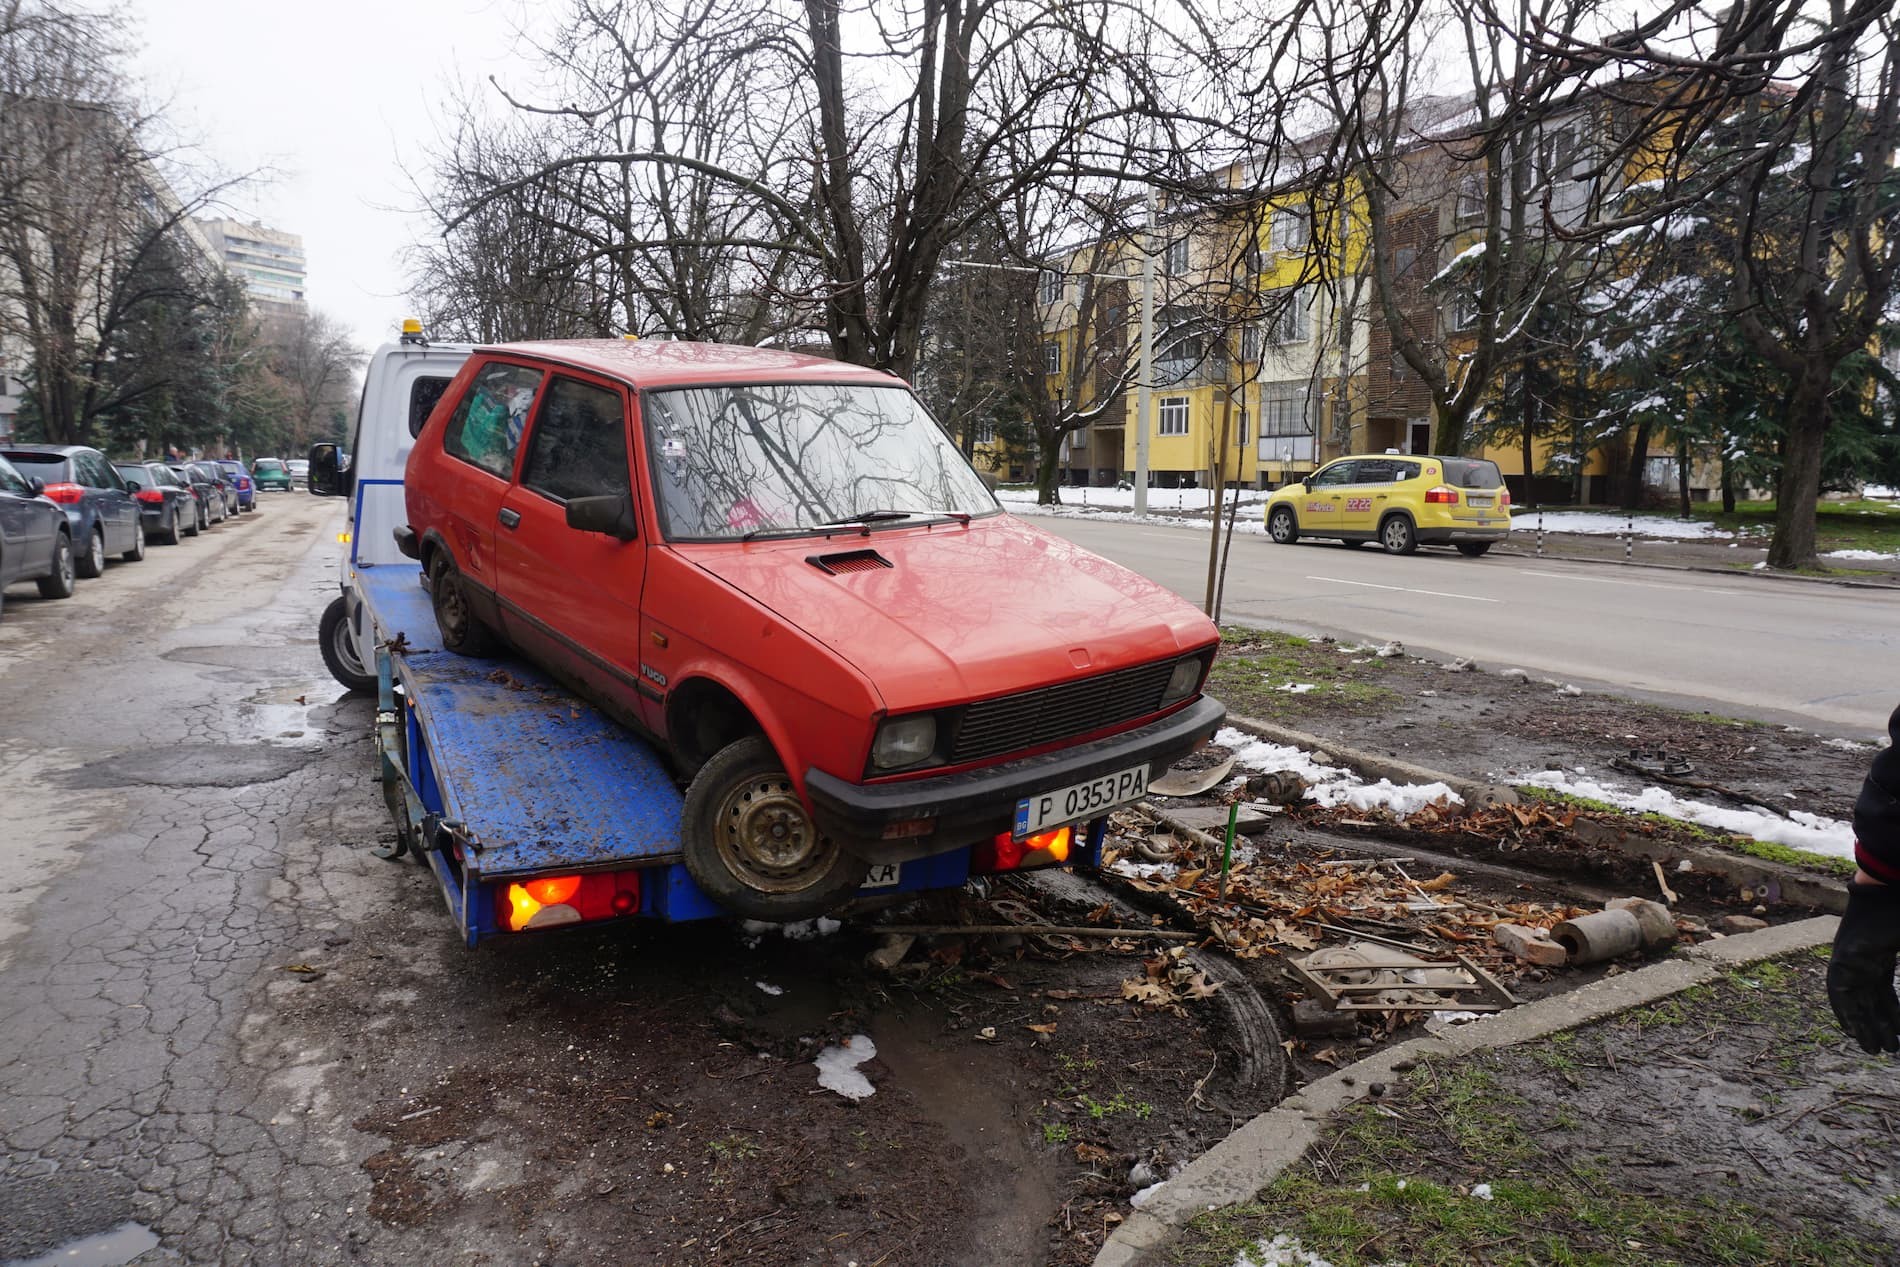 Репатрирането на излезли от употреба автомобили в Русе започва от днес